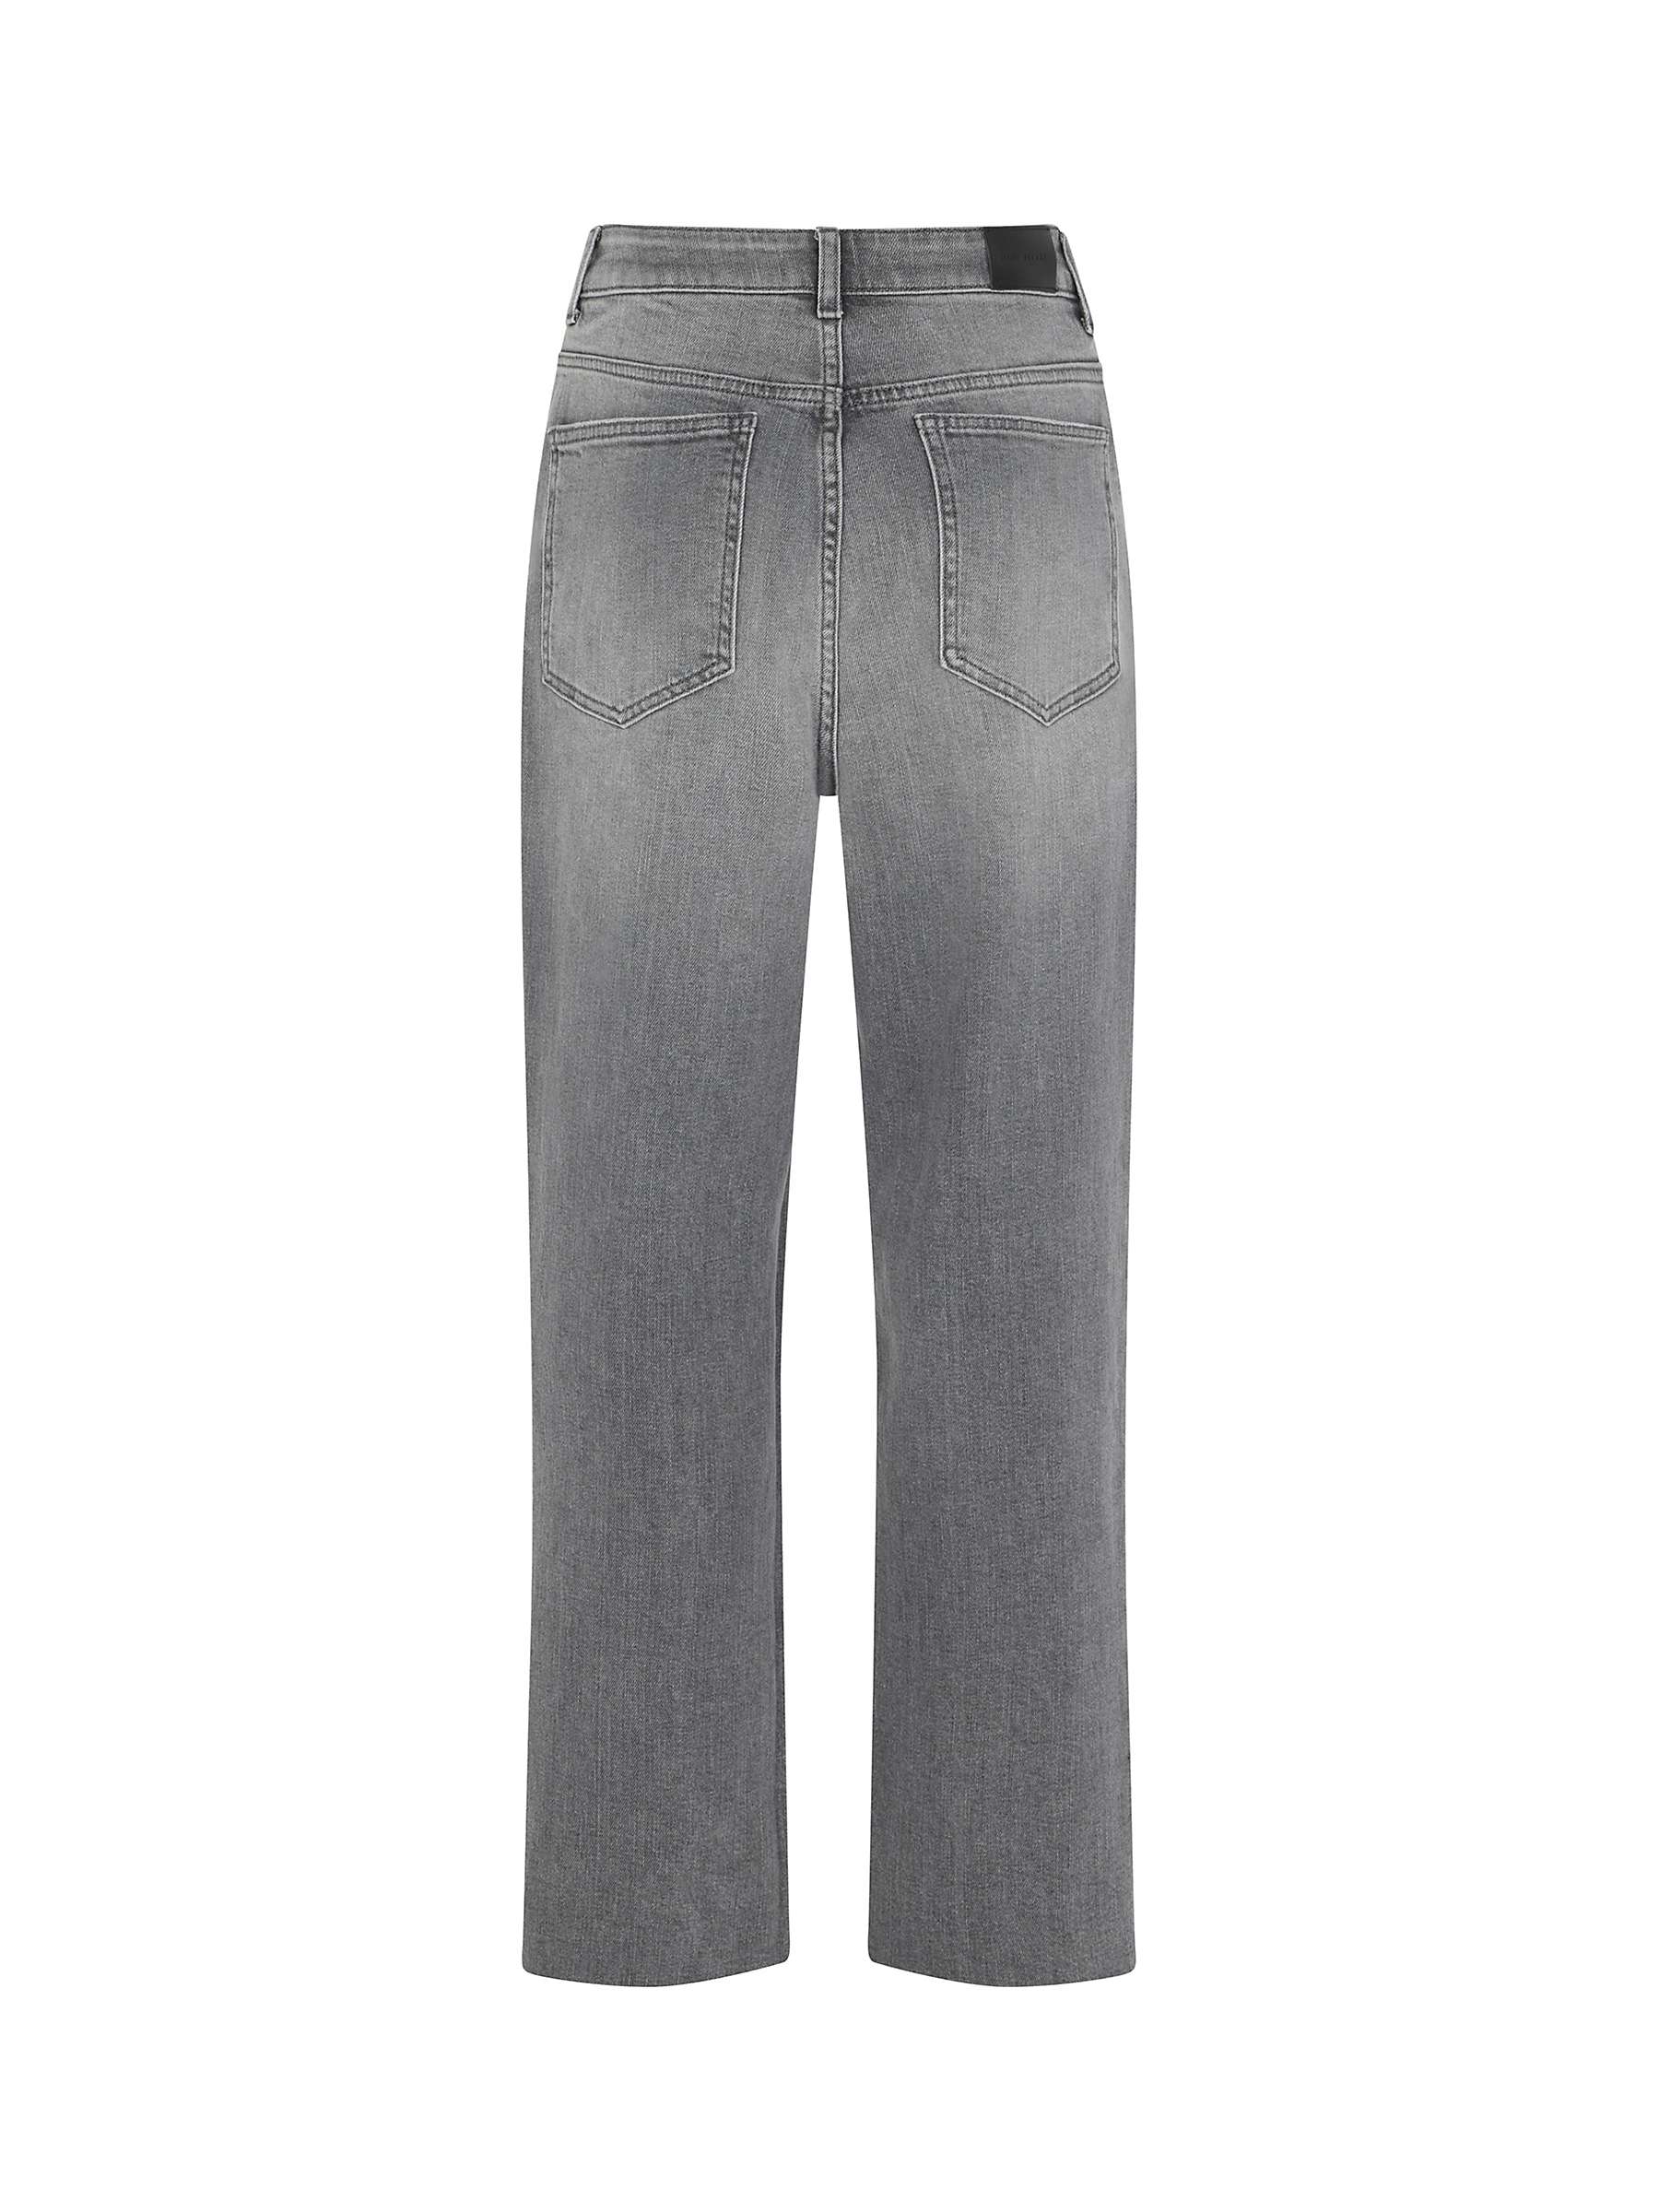 Buy Mint Velvet Straight Leg Jeans Online at johnlewis.com